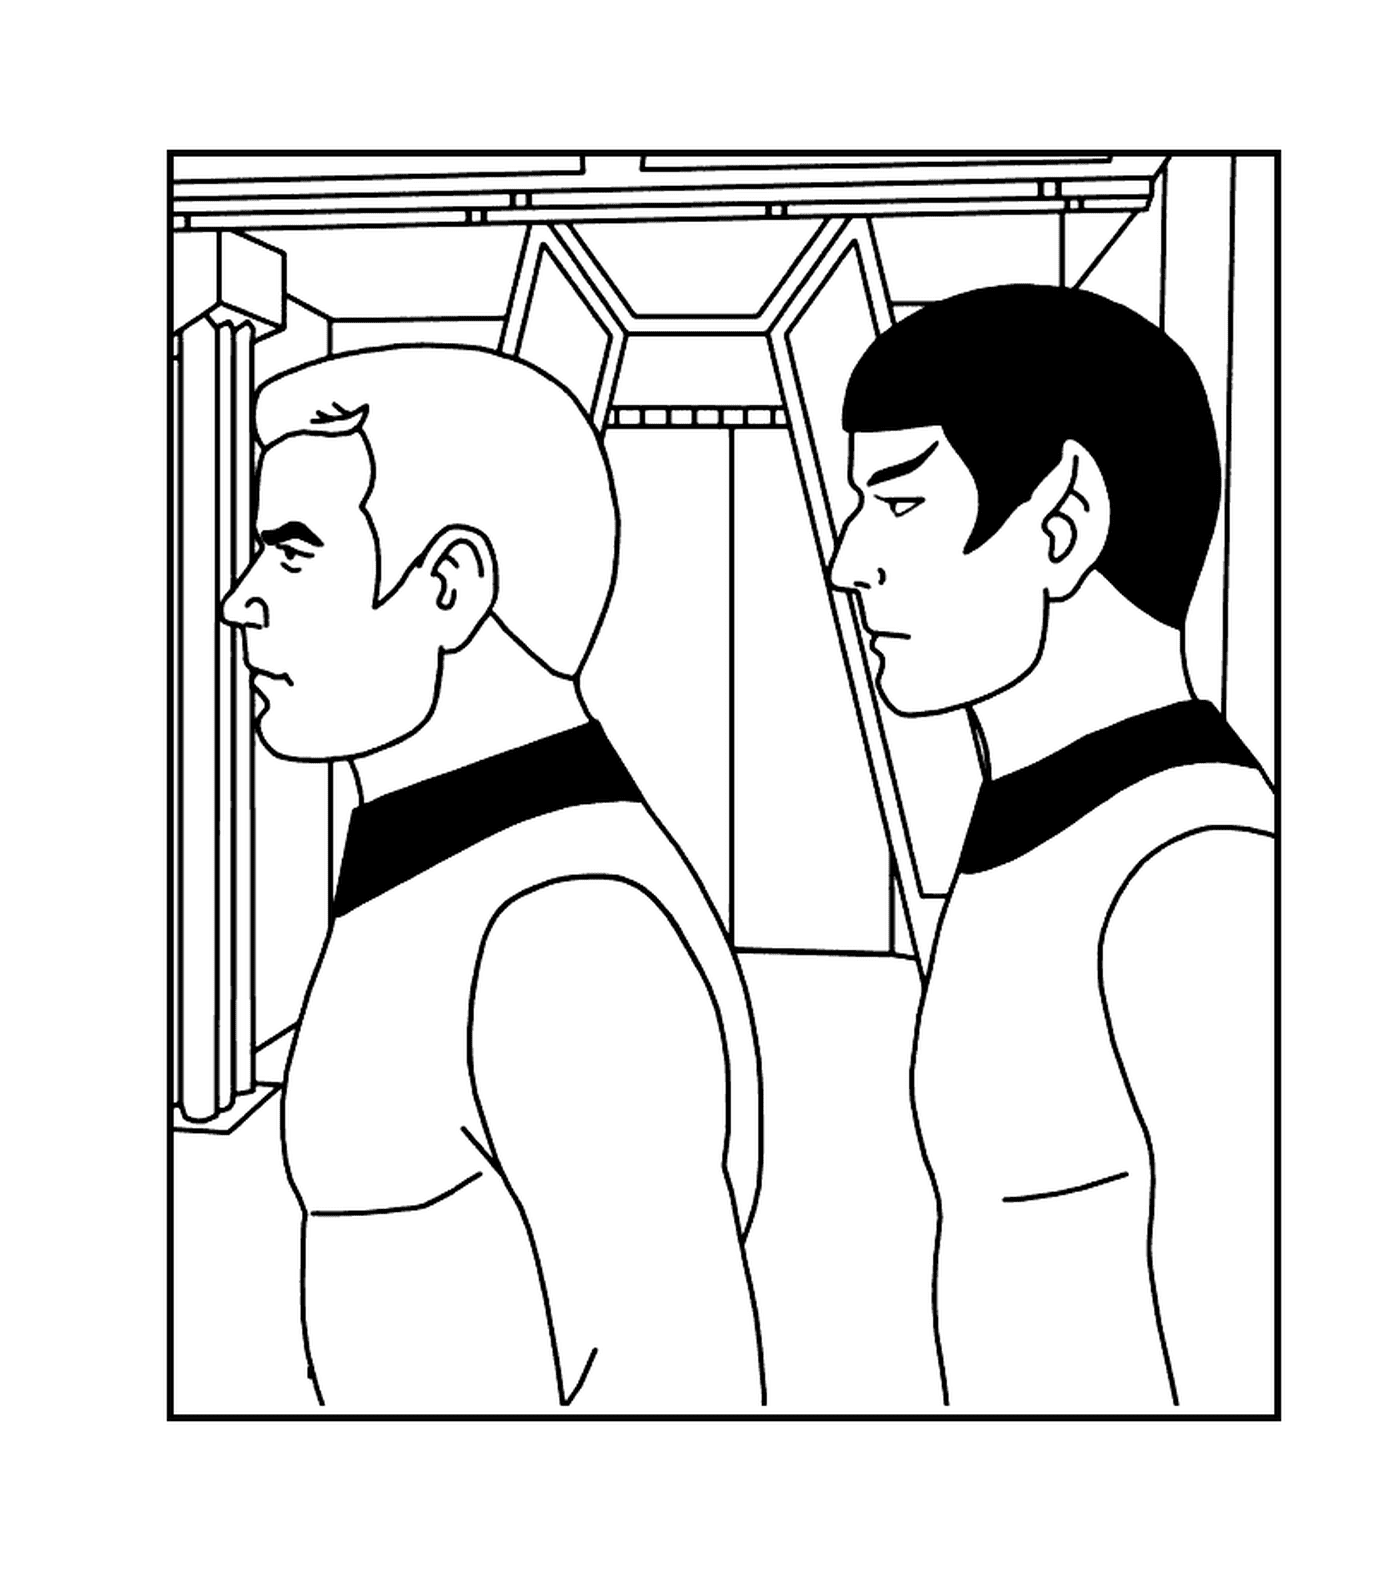  Spock und Kirk von Star Trek 